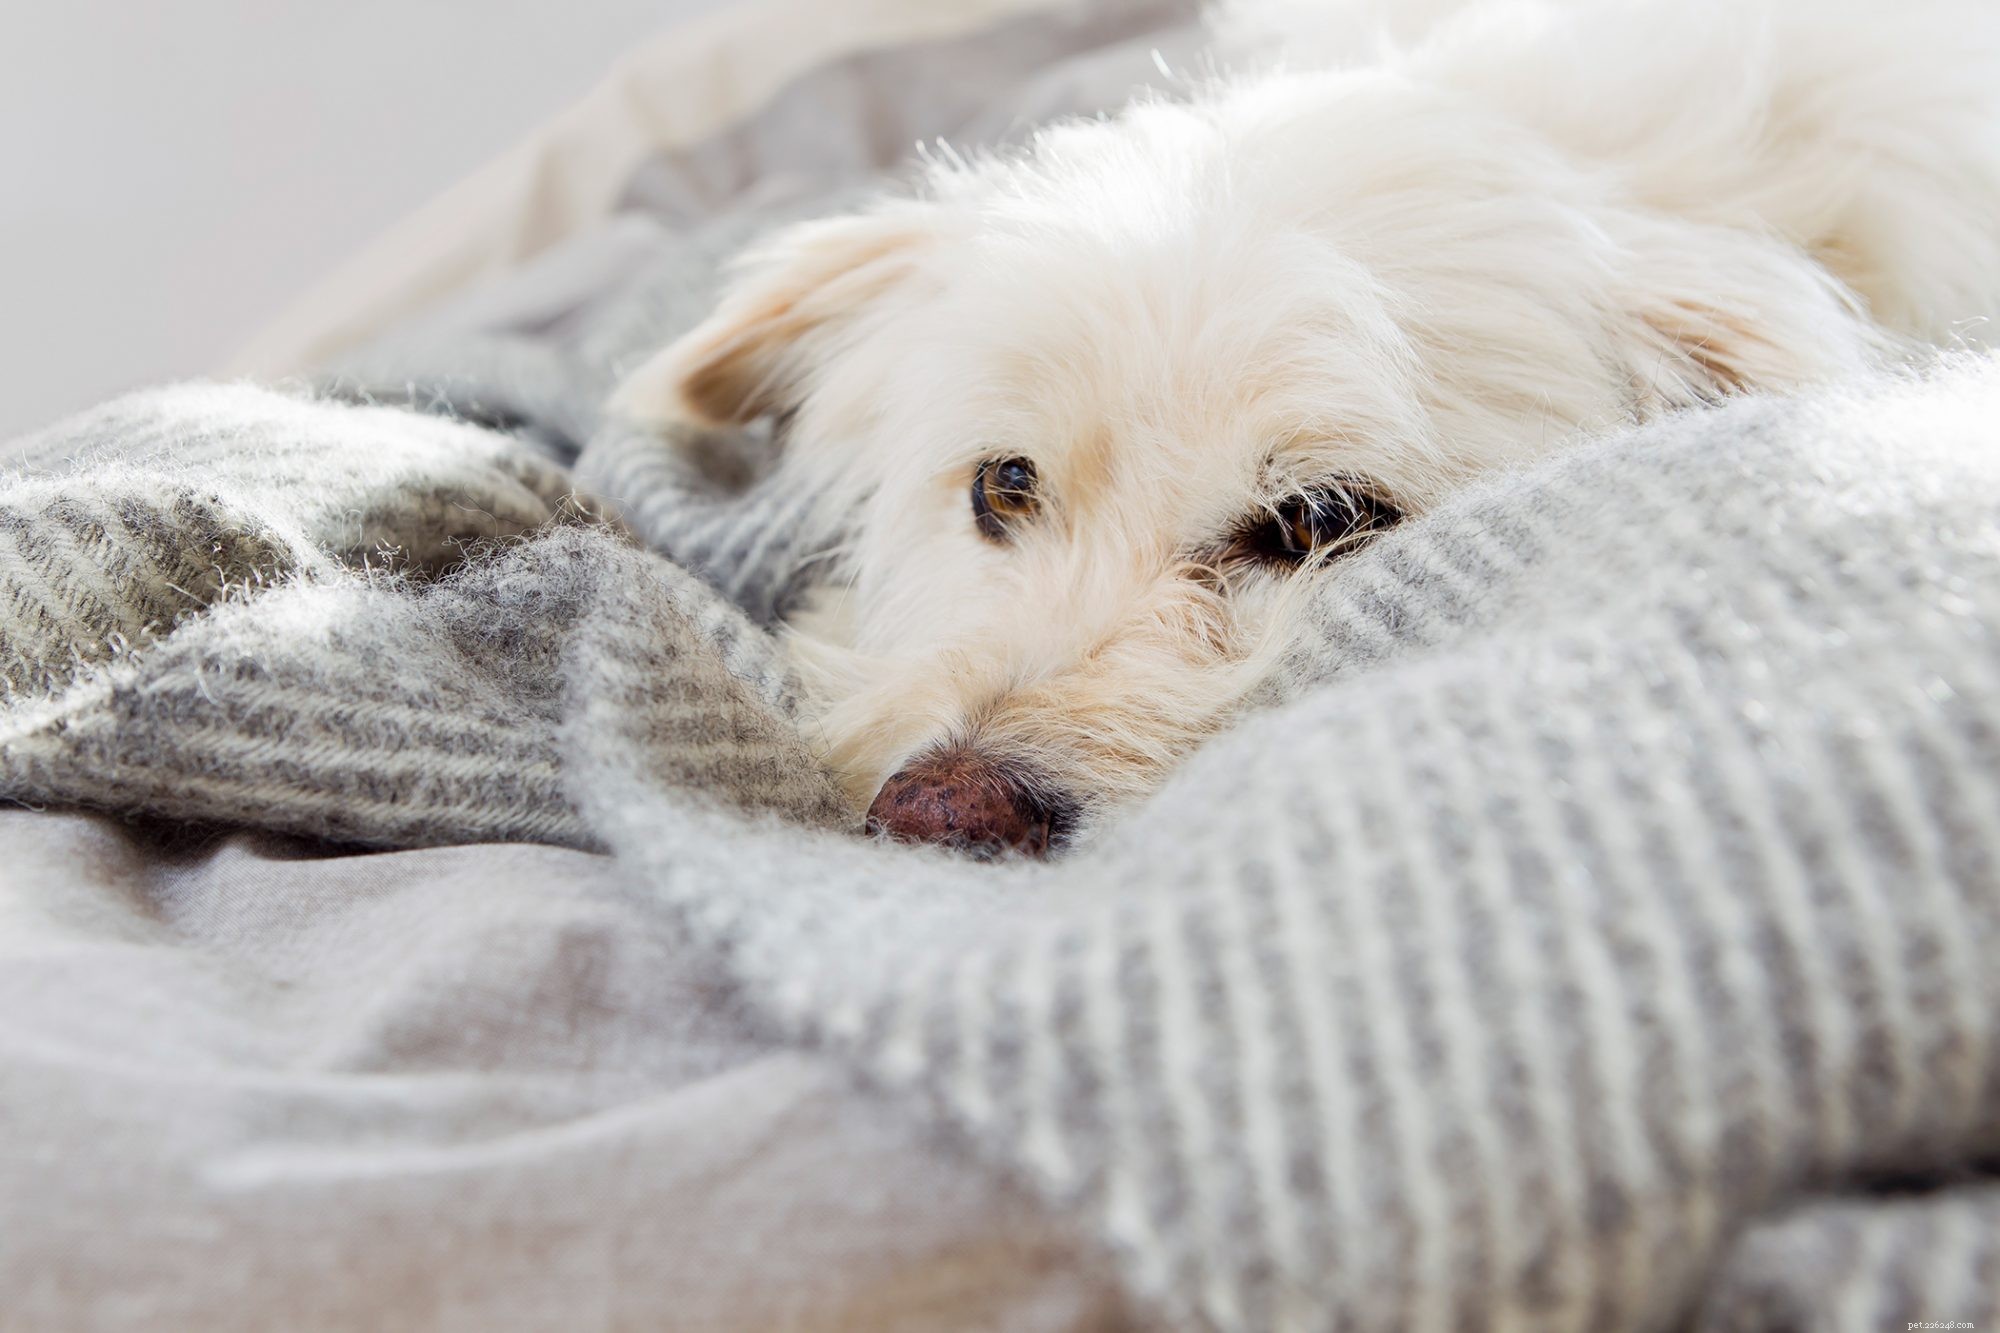 Nidification des chiens :l habitude du coucher de votre chien est-elle noisette ou normale ?